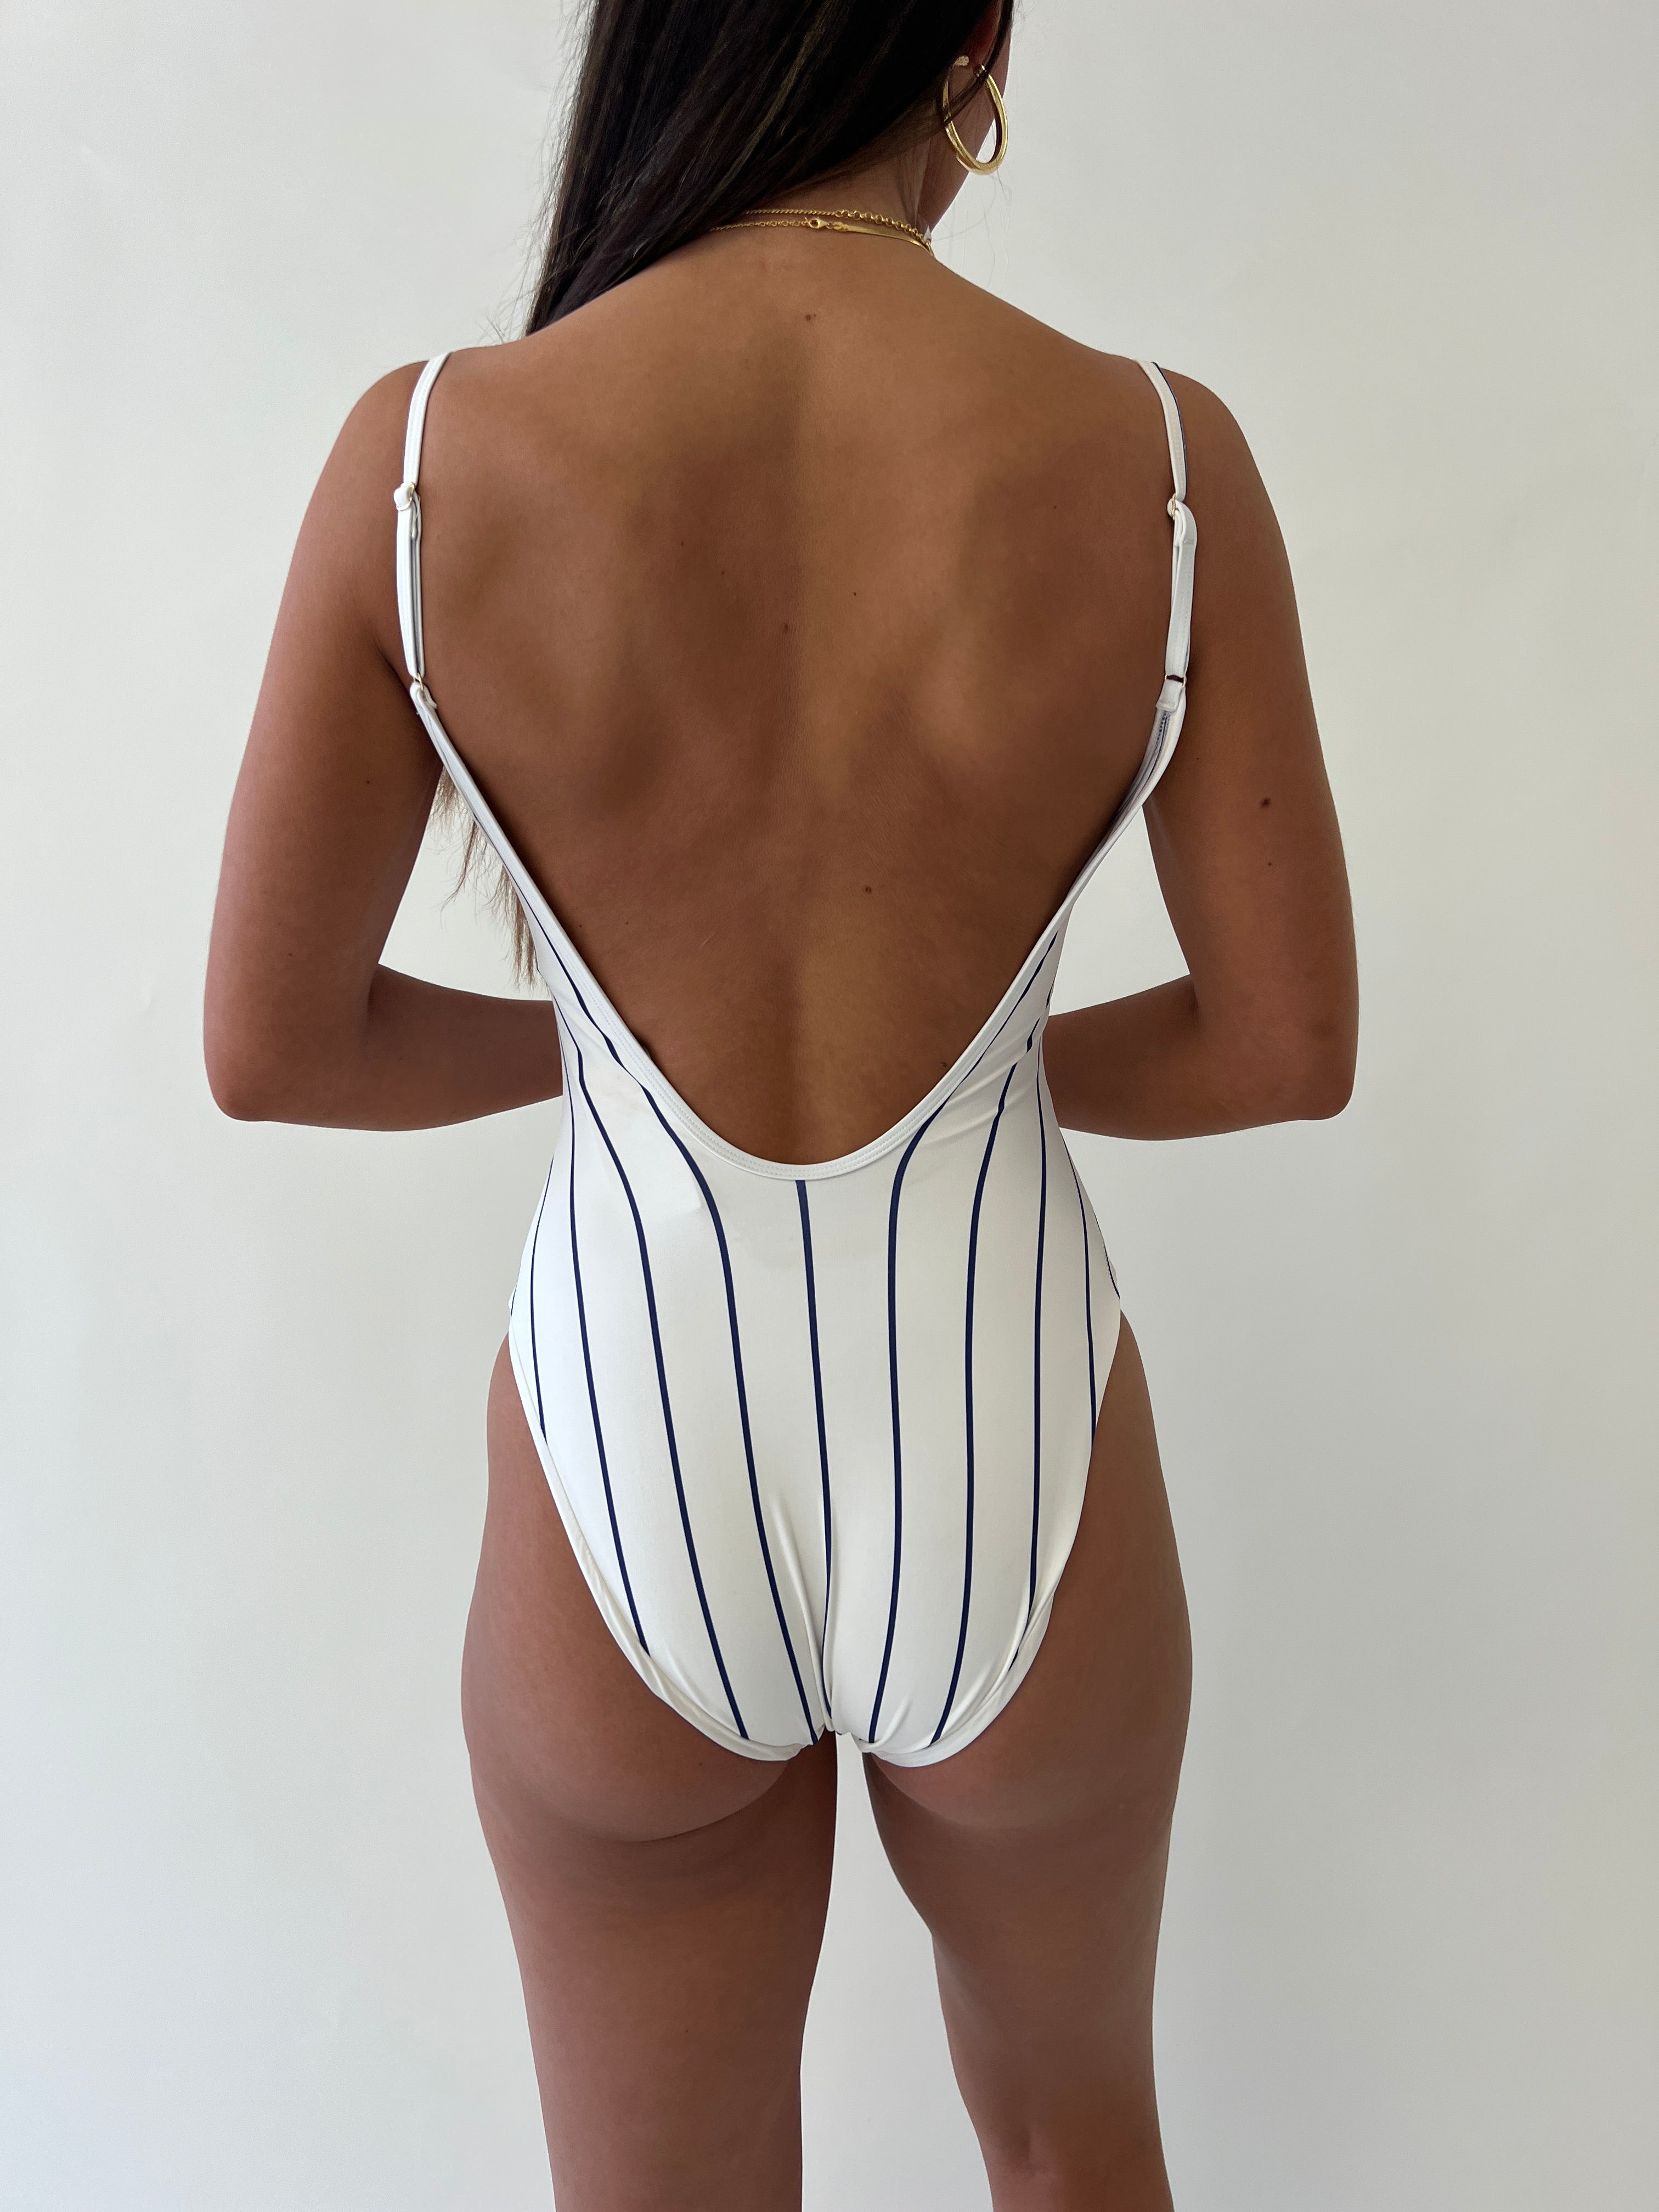 WEWOREWHAT Scoop Cami Bodysuit